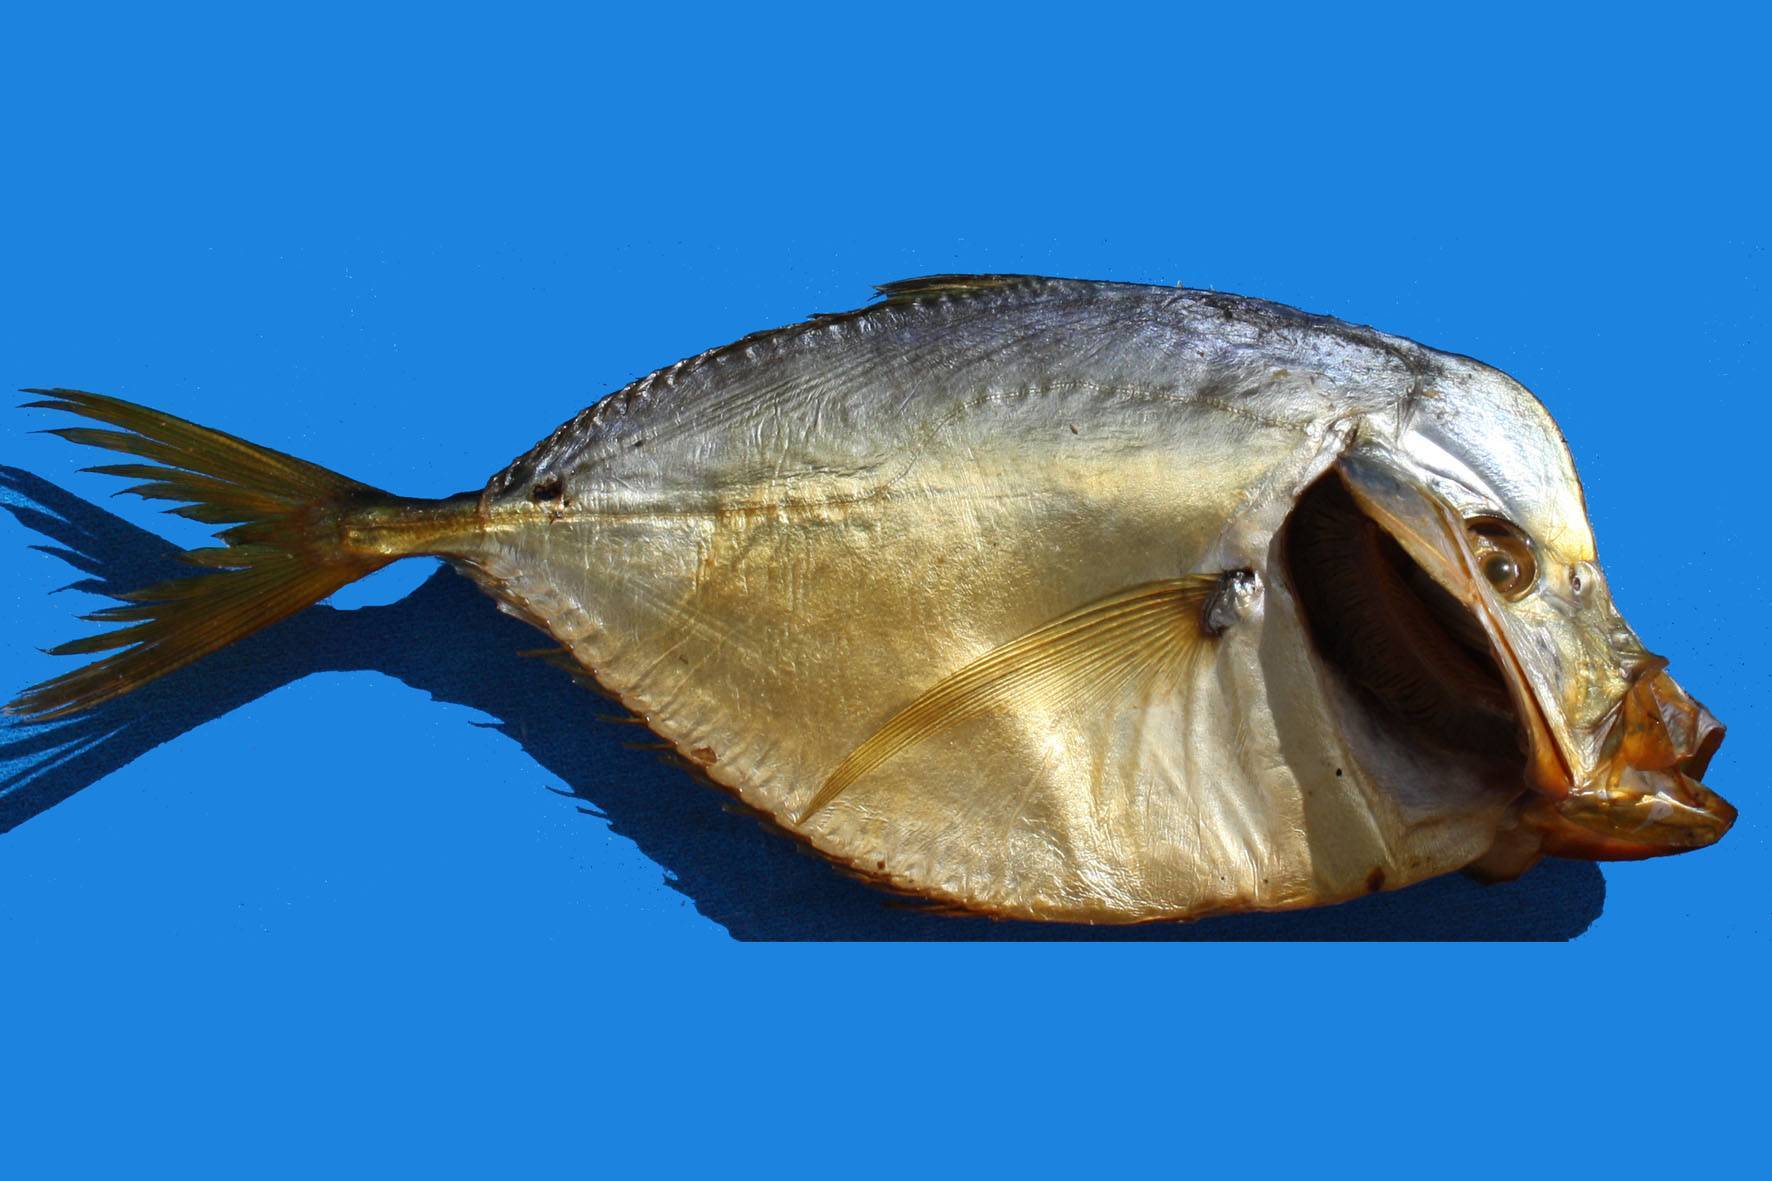 Рыба рыбец и его описание